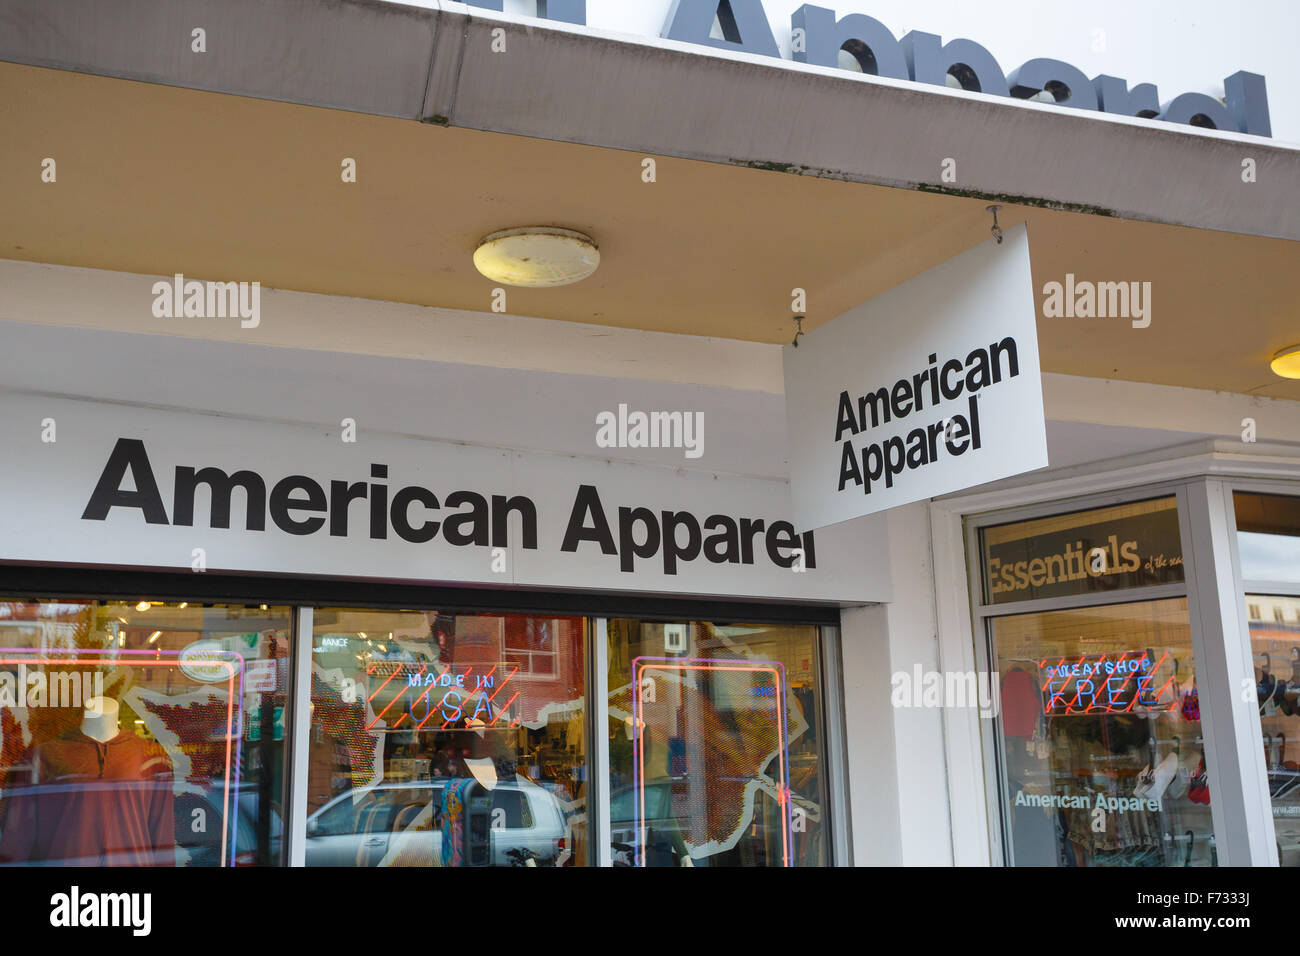 Eugene, OR - 12 novembre 2015 : American Apparel store dans Eugene sur le campus de l'université de l'oregon. Banque D'Images